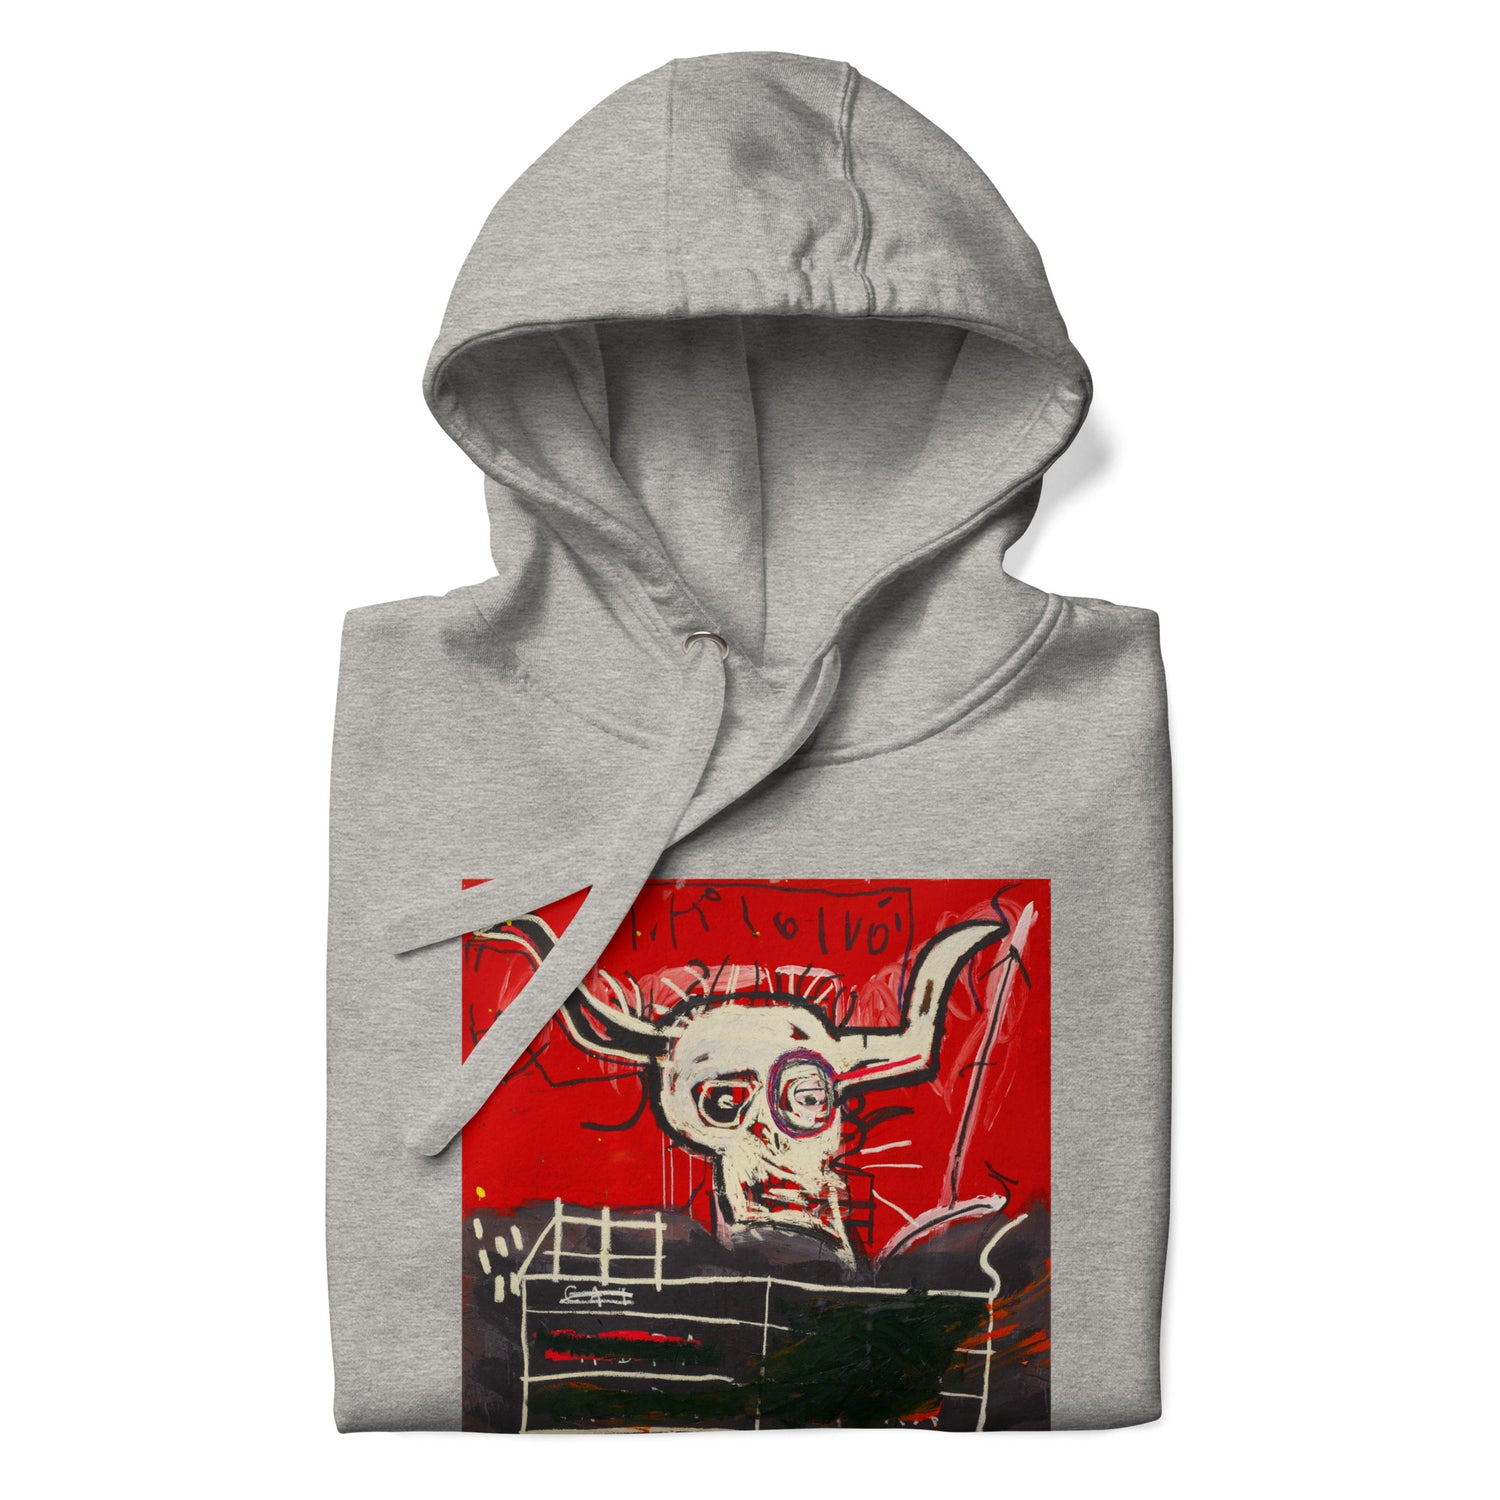 Jean-Michel Basquiat "Cabra" Artwork Printed Premium Streetwear Sweatshirt Hoodie Grey